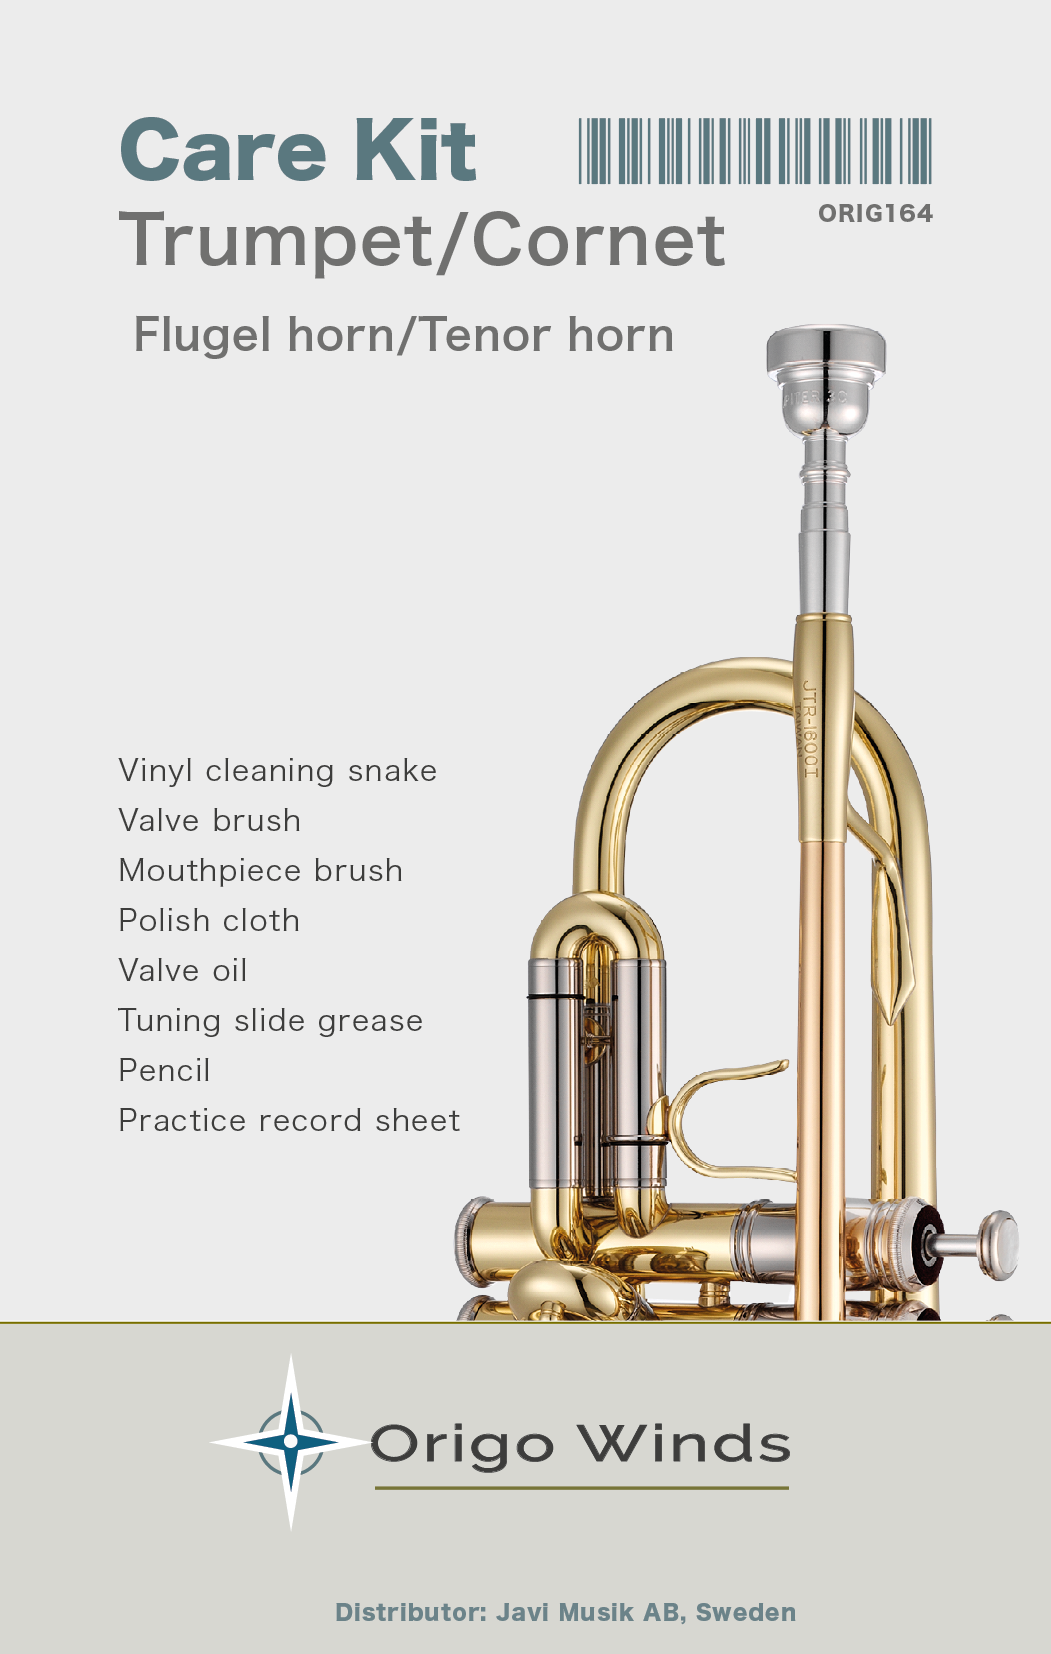 Origo Winds Trumpet/Cornet Care Kit - Vedlikeholdssett for trompet / kornett